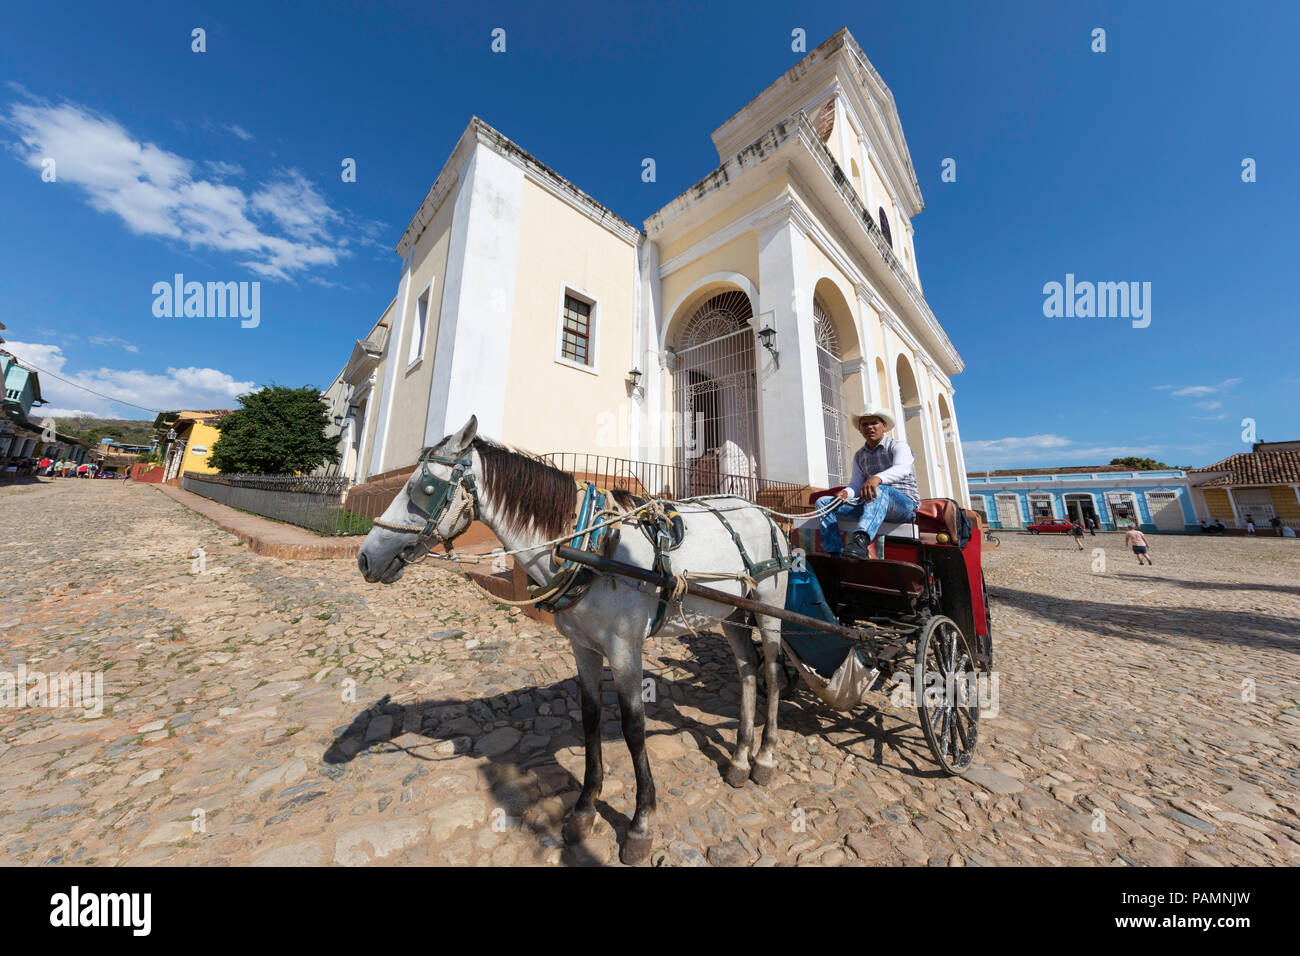 Una carrozza trainata da cavalli noto localmente come un coche in Plaza Mayor, nel Patrimonio Mondiale dell Unesco città di Trinidad, Cuba. Foto Stock